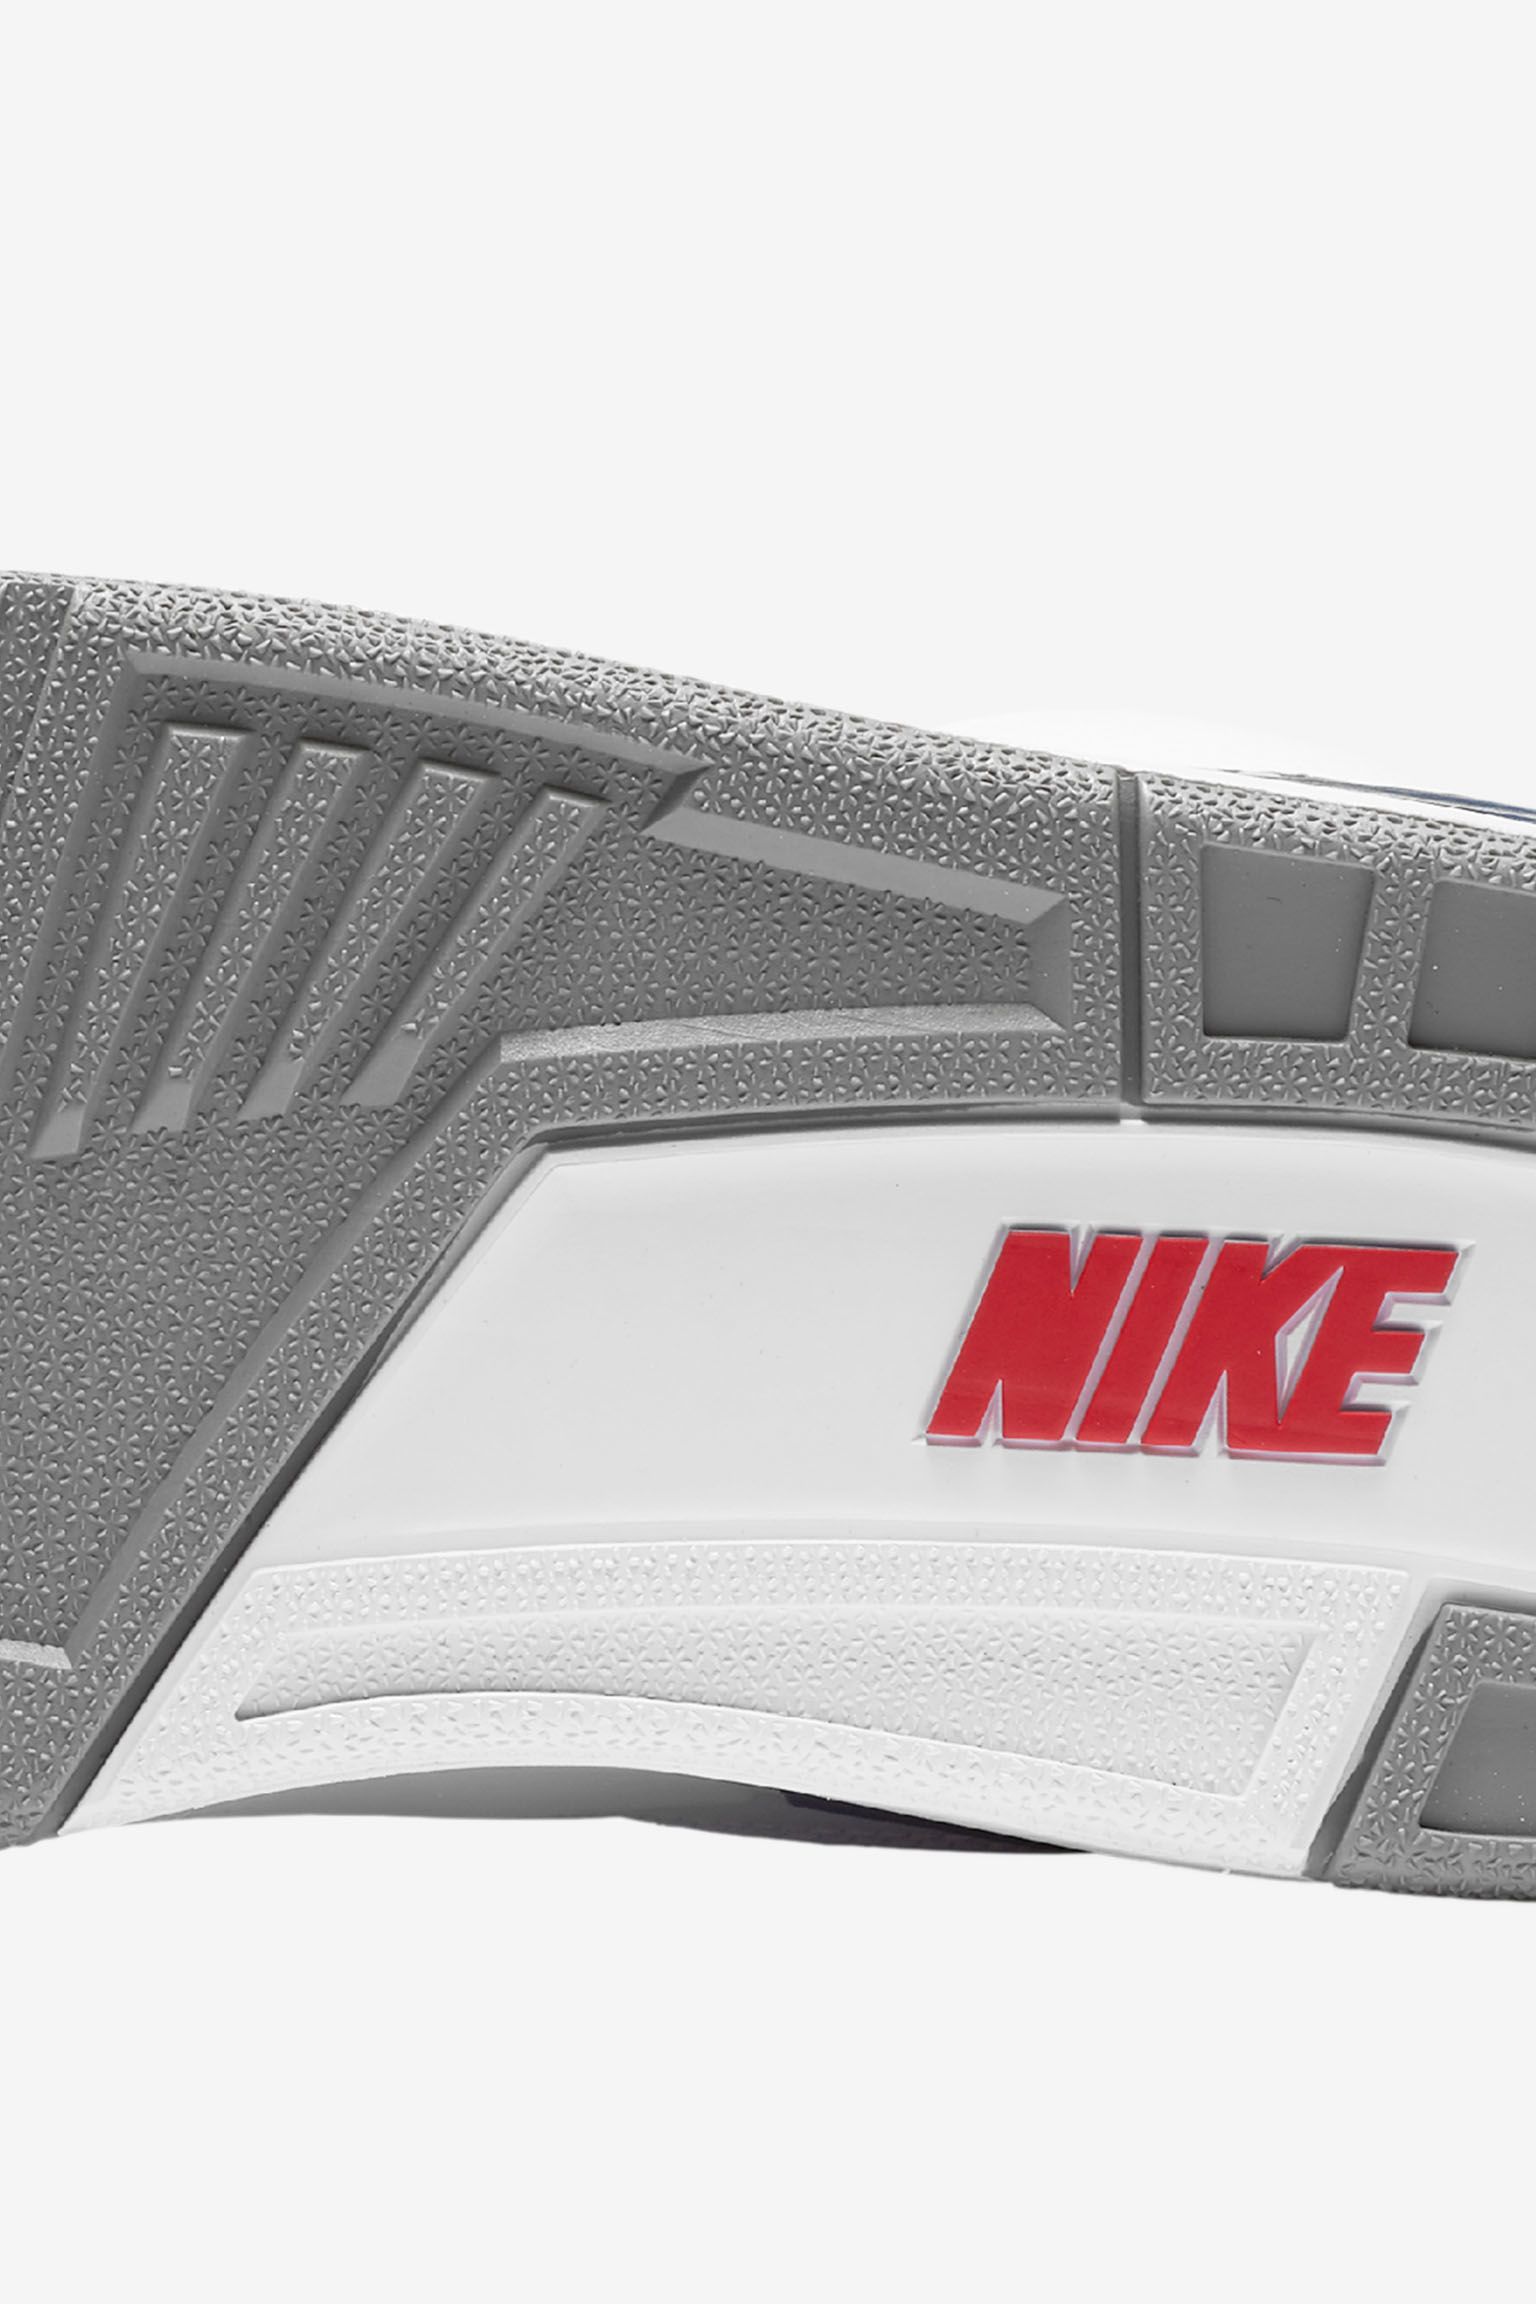 Air Jordan 3 Retro OG 'White & Cement Grey & Blue'. Nike SNKRS